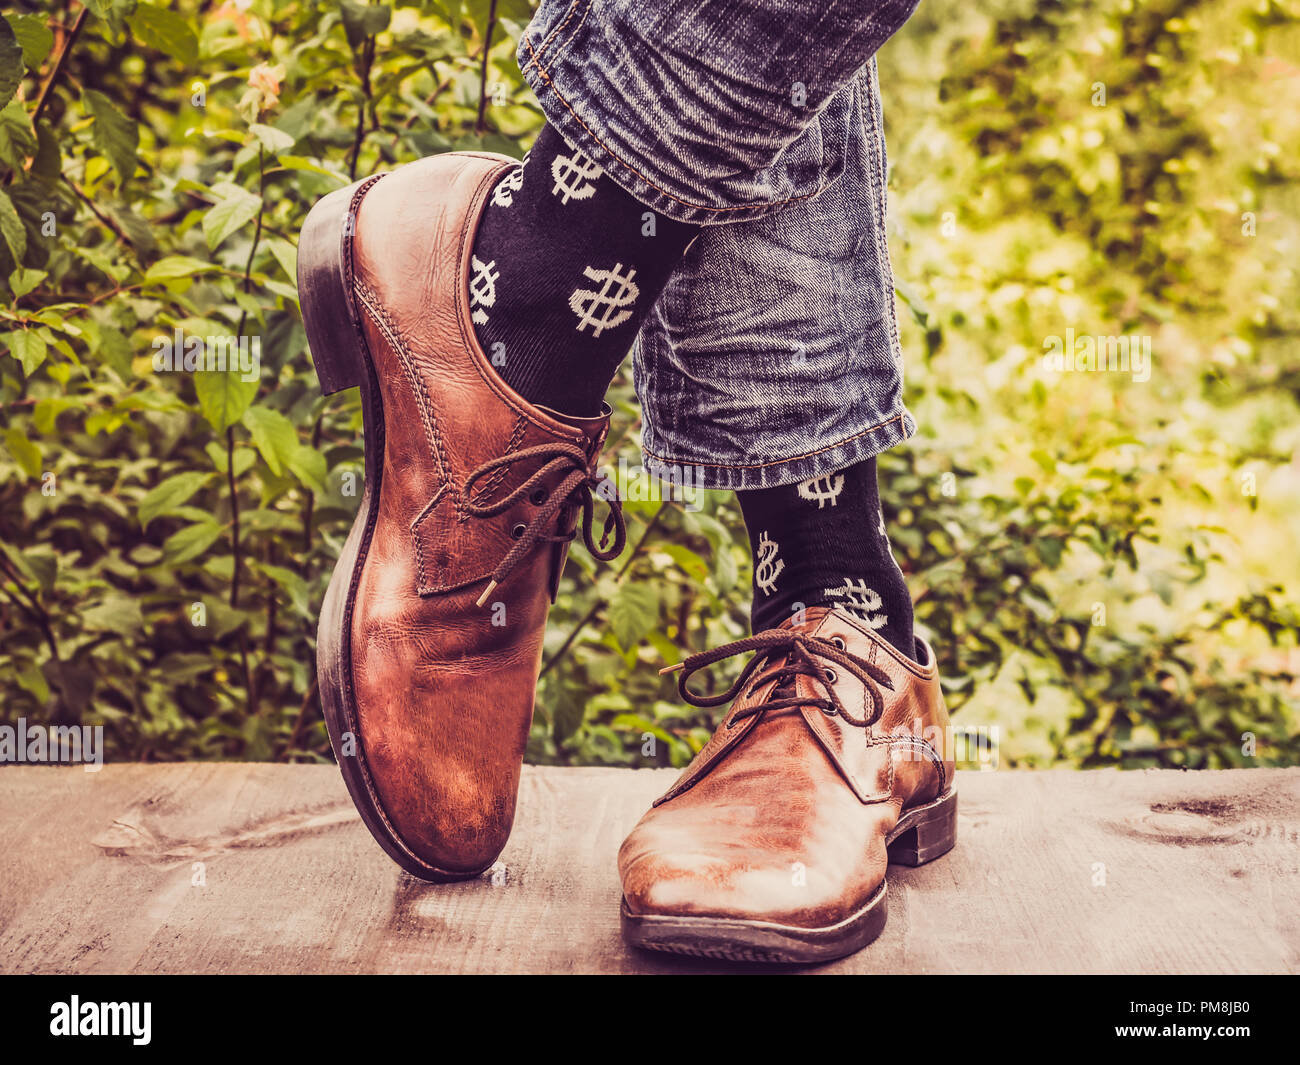 Les jambes de l'homme dans l'élégant quartier de chaussures, chaussettes  noirs avec des motifs en forme de dollars US sur une terrasse en bois dans  le contexte des arbres verts. Beauté, fa